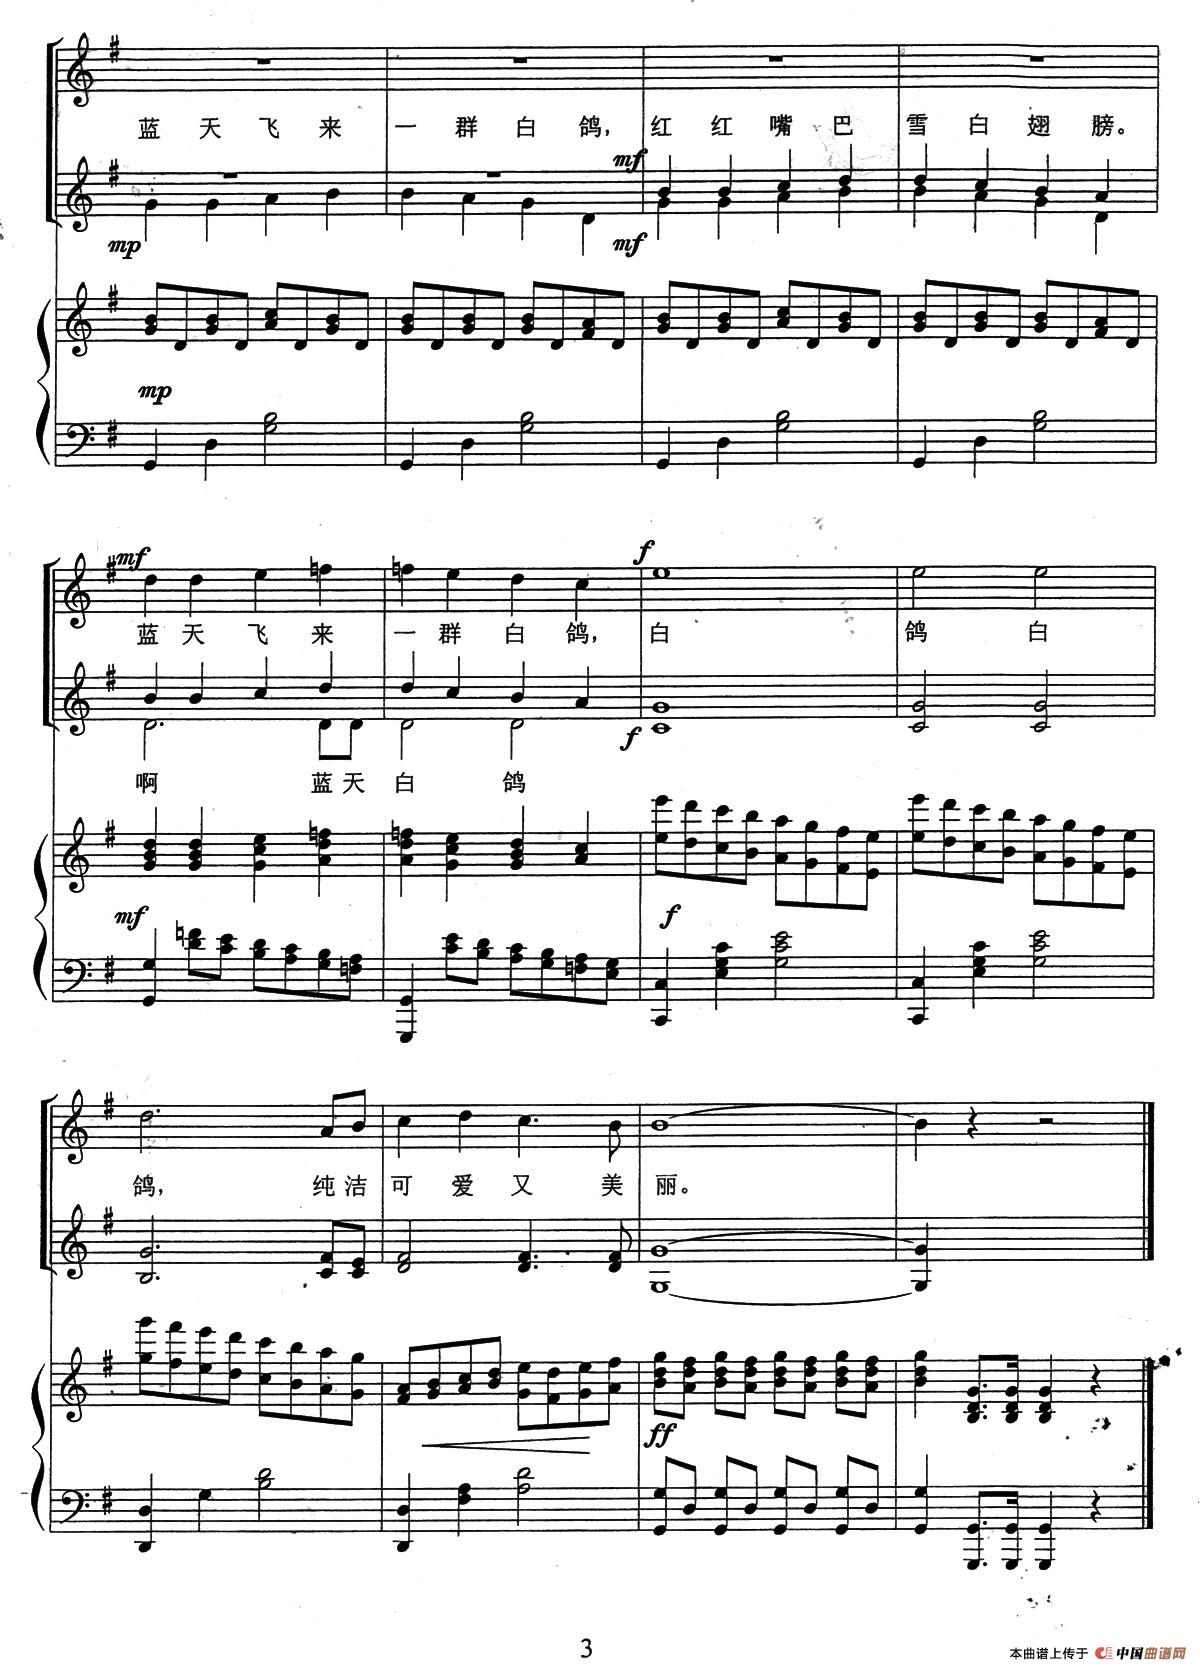 和平白鸽（童声三部合唱、正谱版）(1)_03、和平白鸽（童声合唱）（五线谱）3.jpg